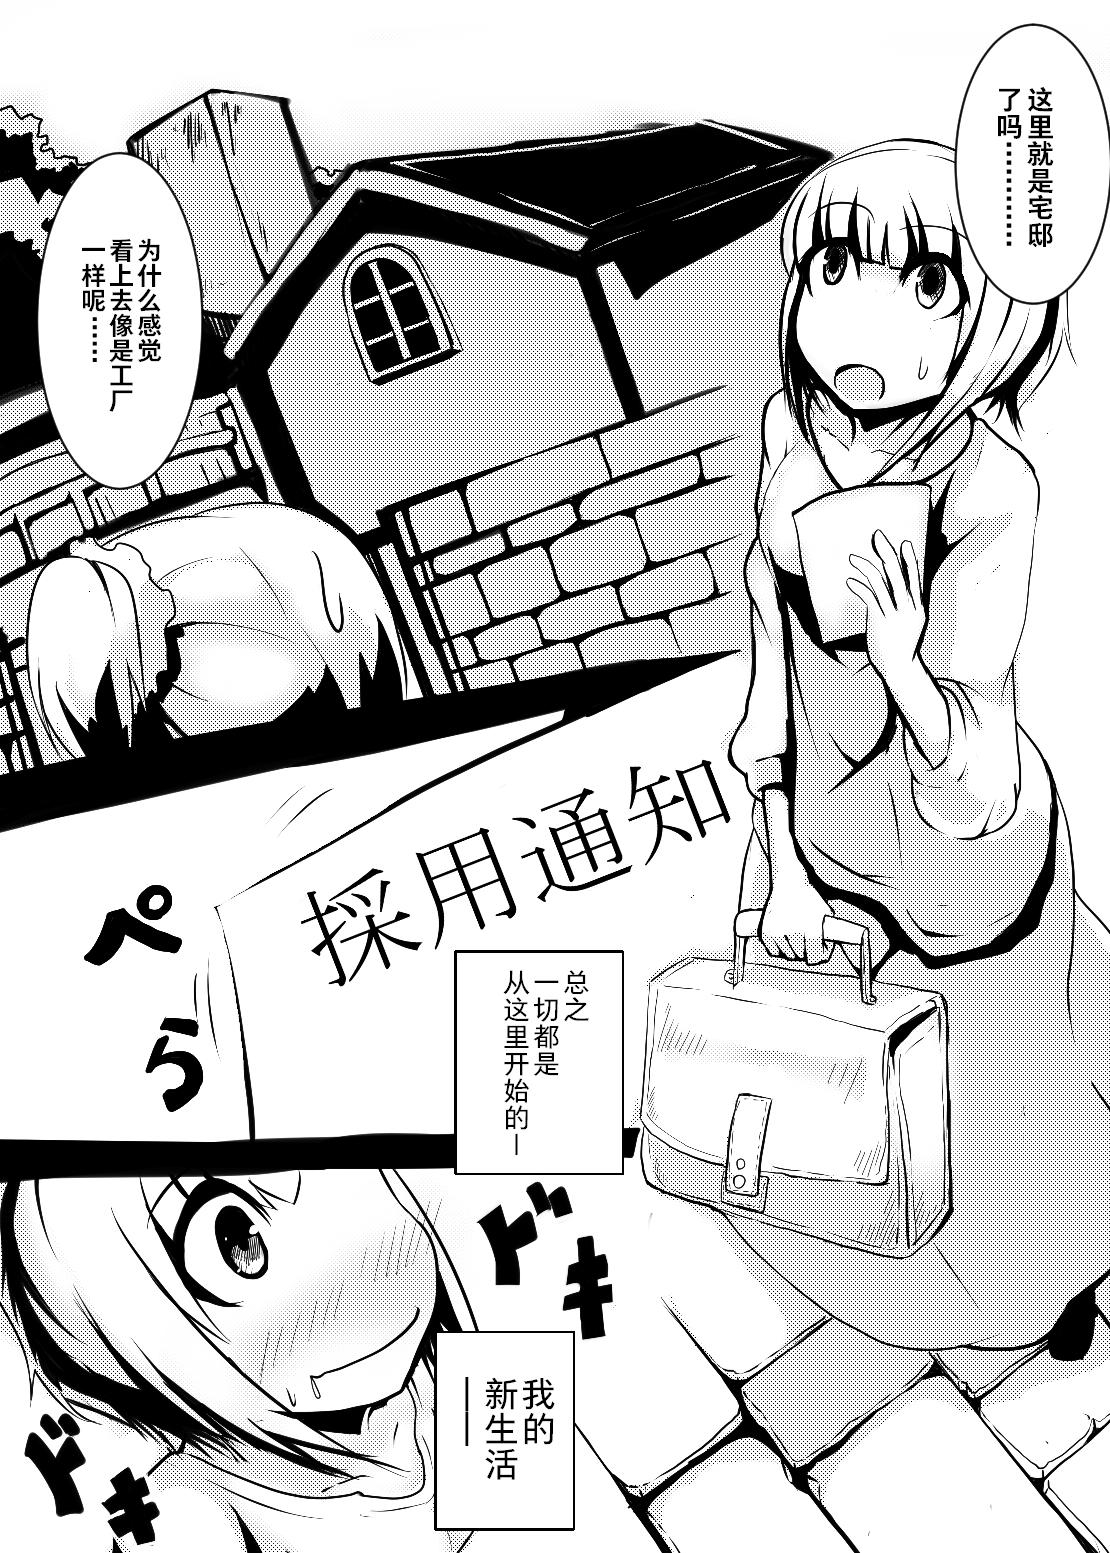 Maid-san no Chichi o Ookiku Shitari Shishi o Buttagiru dake no Manga | 这只是一部关于把女仆小姐的乳房变大并且砍断四肢的漫画而已 1